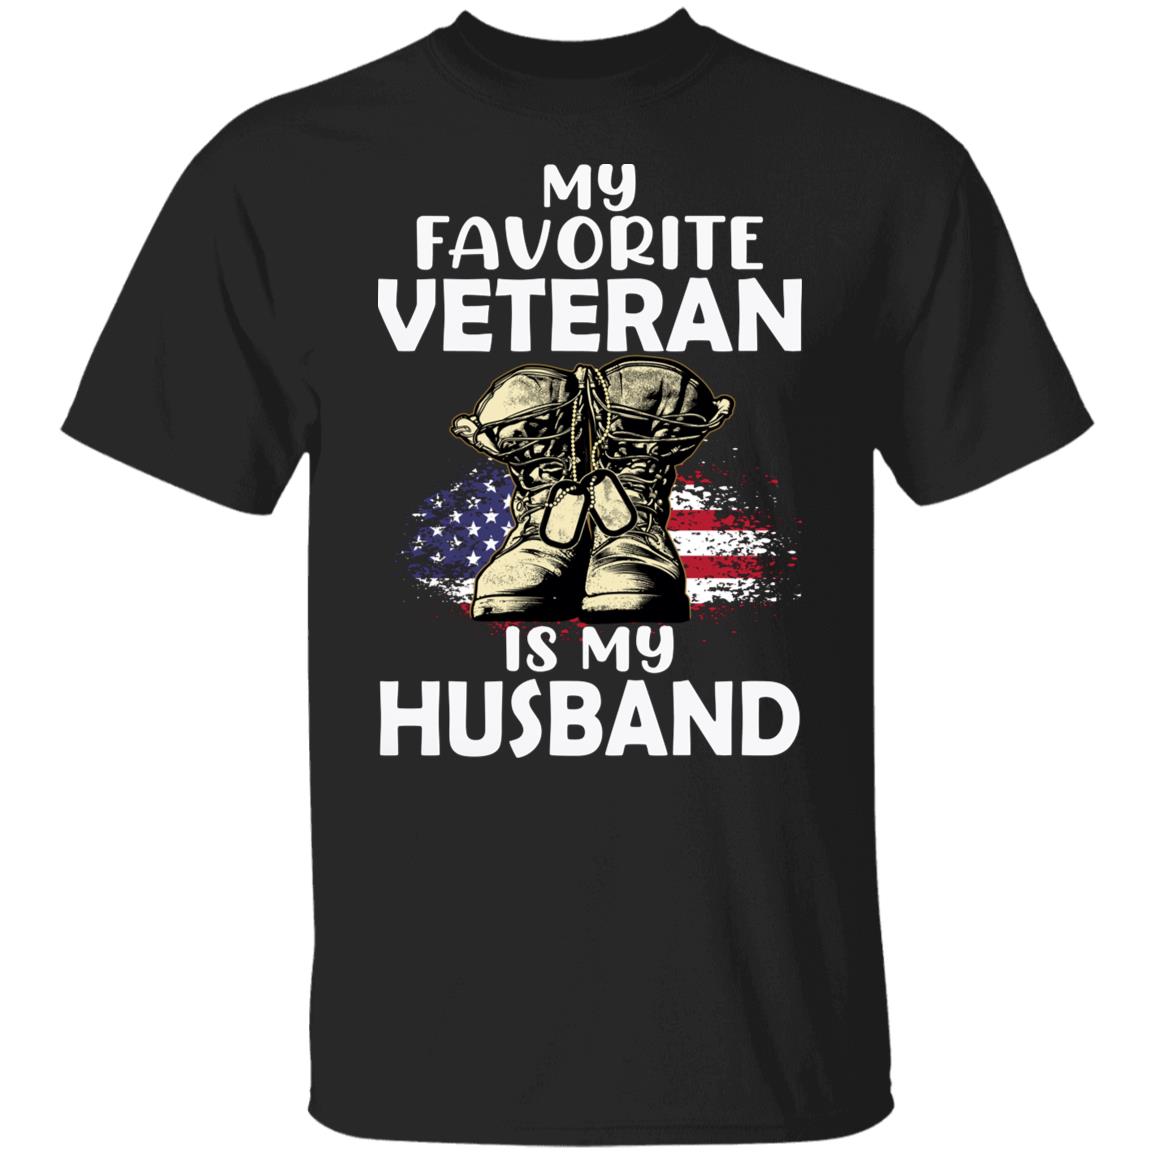 My Favorite Veteran is My Husband Ladies Tee Shirt